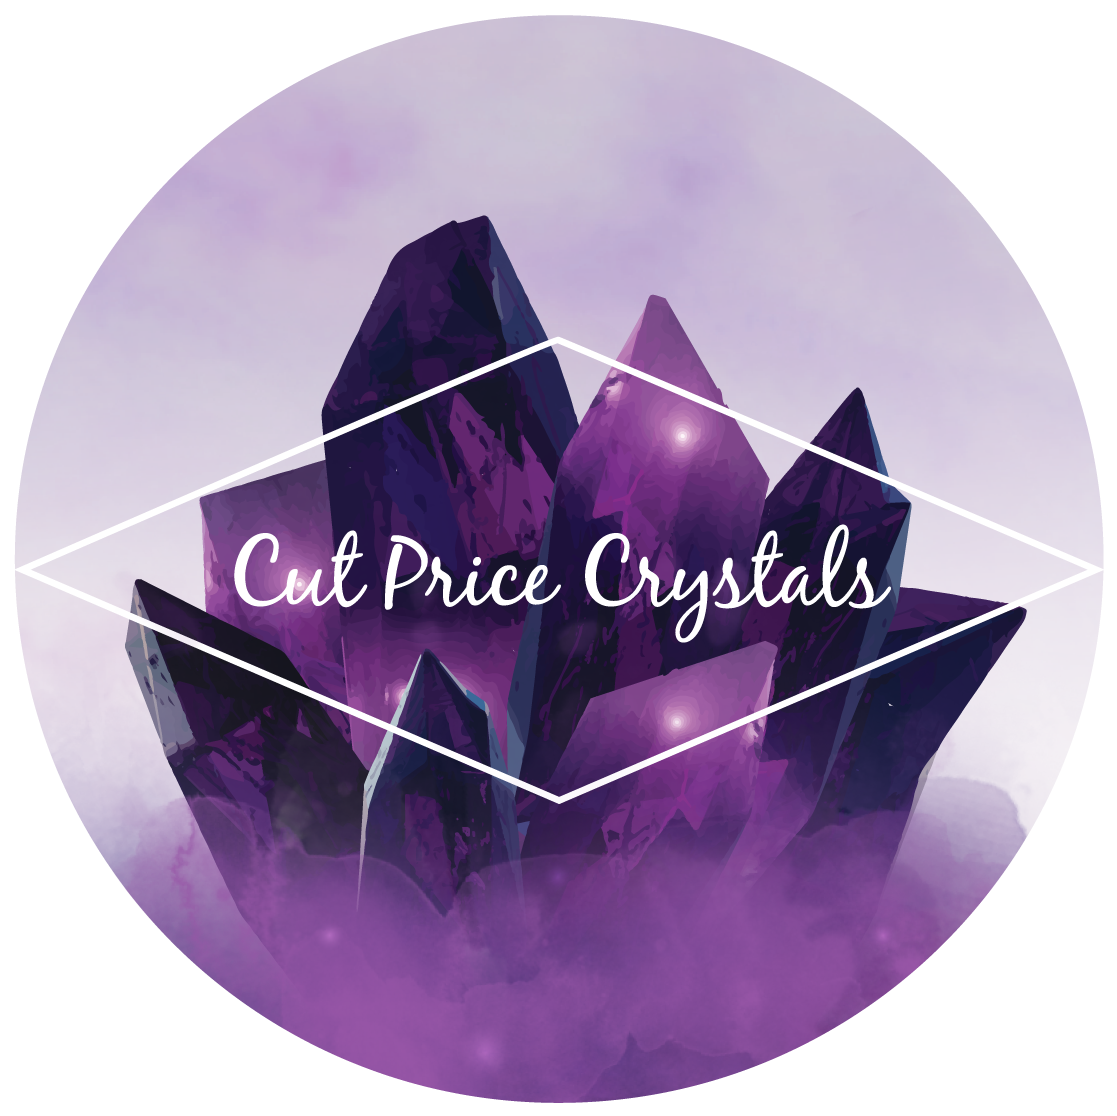 Cut Price Crystals – Cut Price Crystals